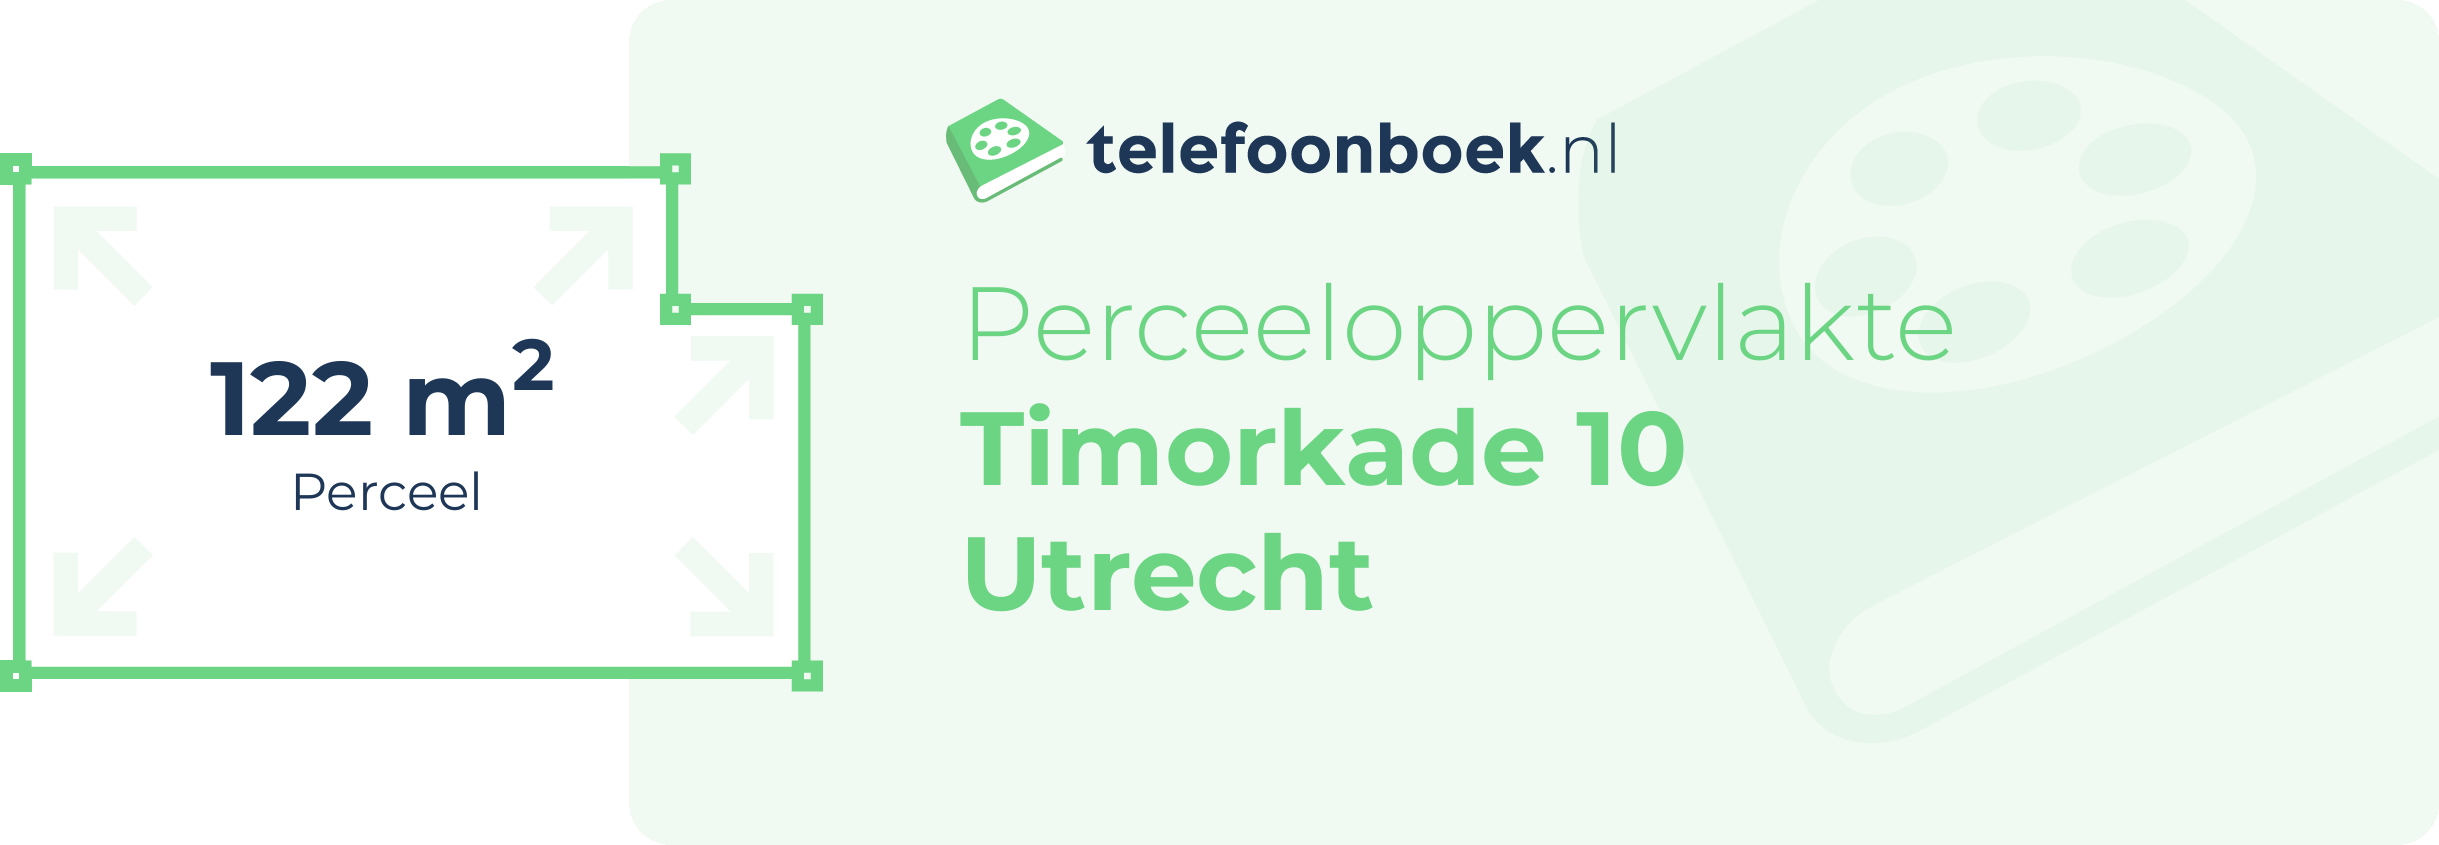 Perceeloppervlakte Timorkade 10 Utrecht